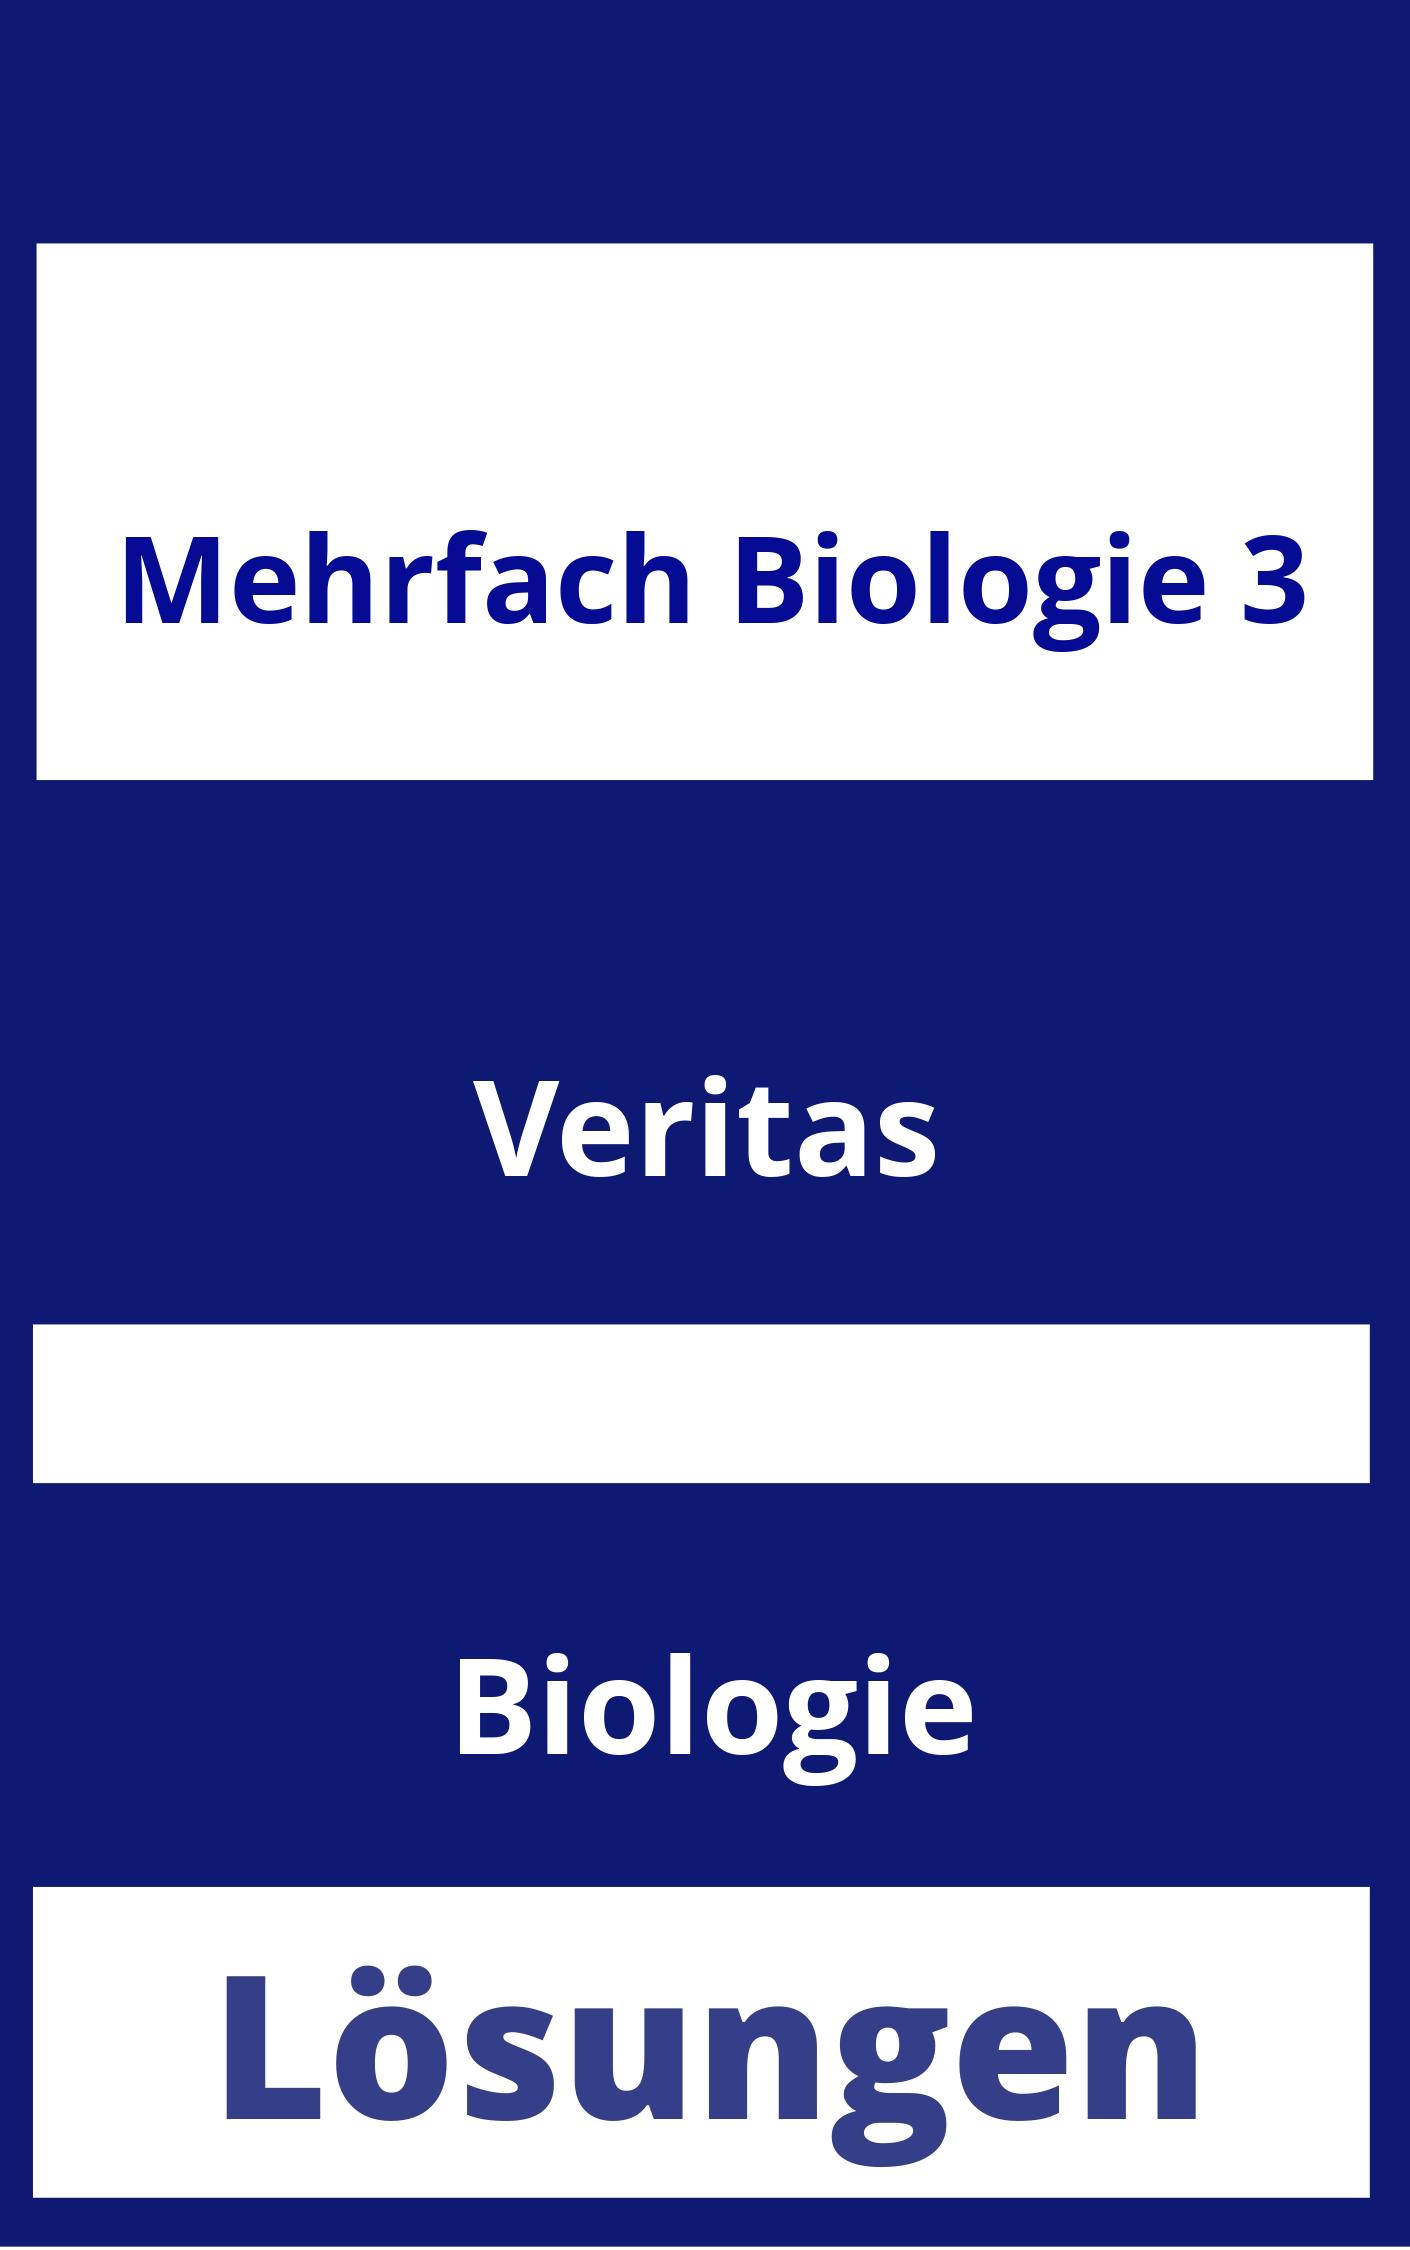 MEHRfach Biologie 3